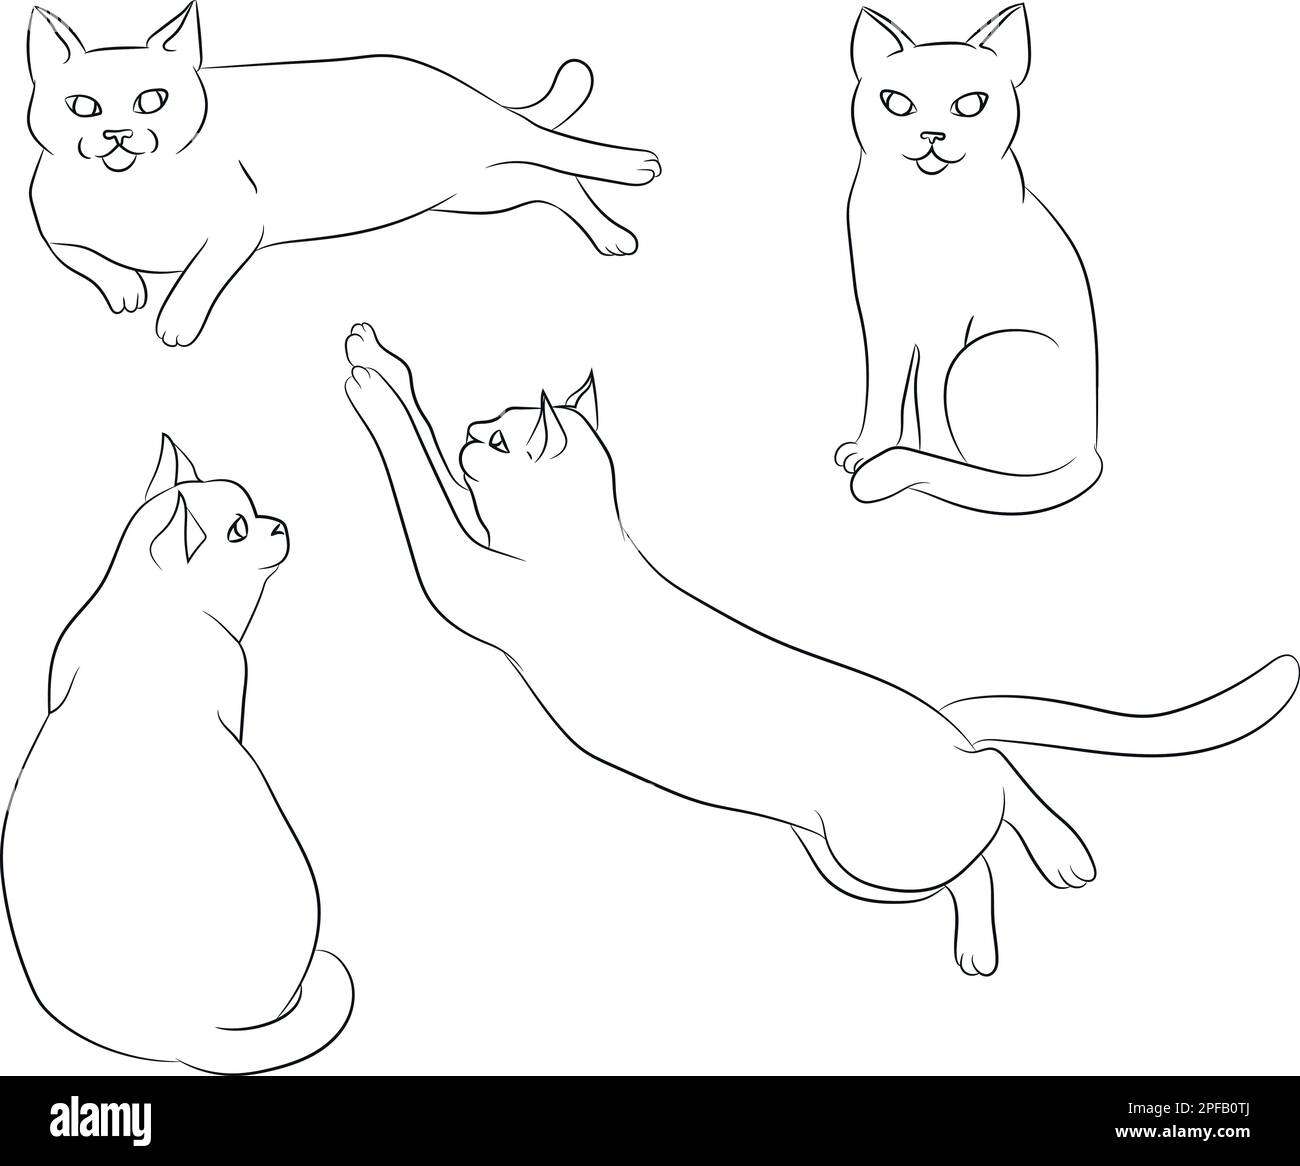 Süße, von Hand gezogene weiße Katze in verschiedenen Positionen. Set von Katzenpositionen. Katzenposieren. Katzen. Skizzieren. Vektorgrafik. Stock Vektor